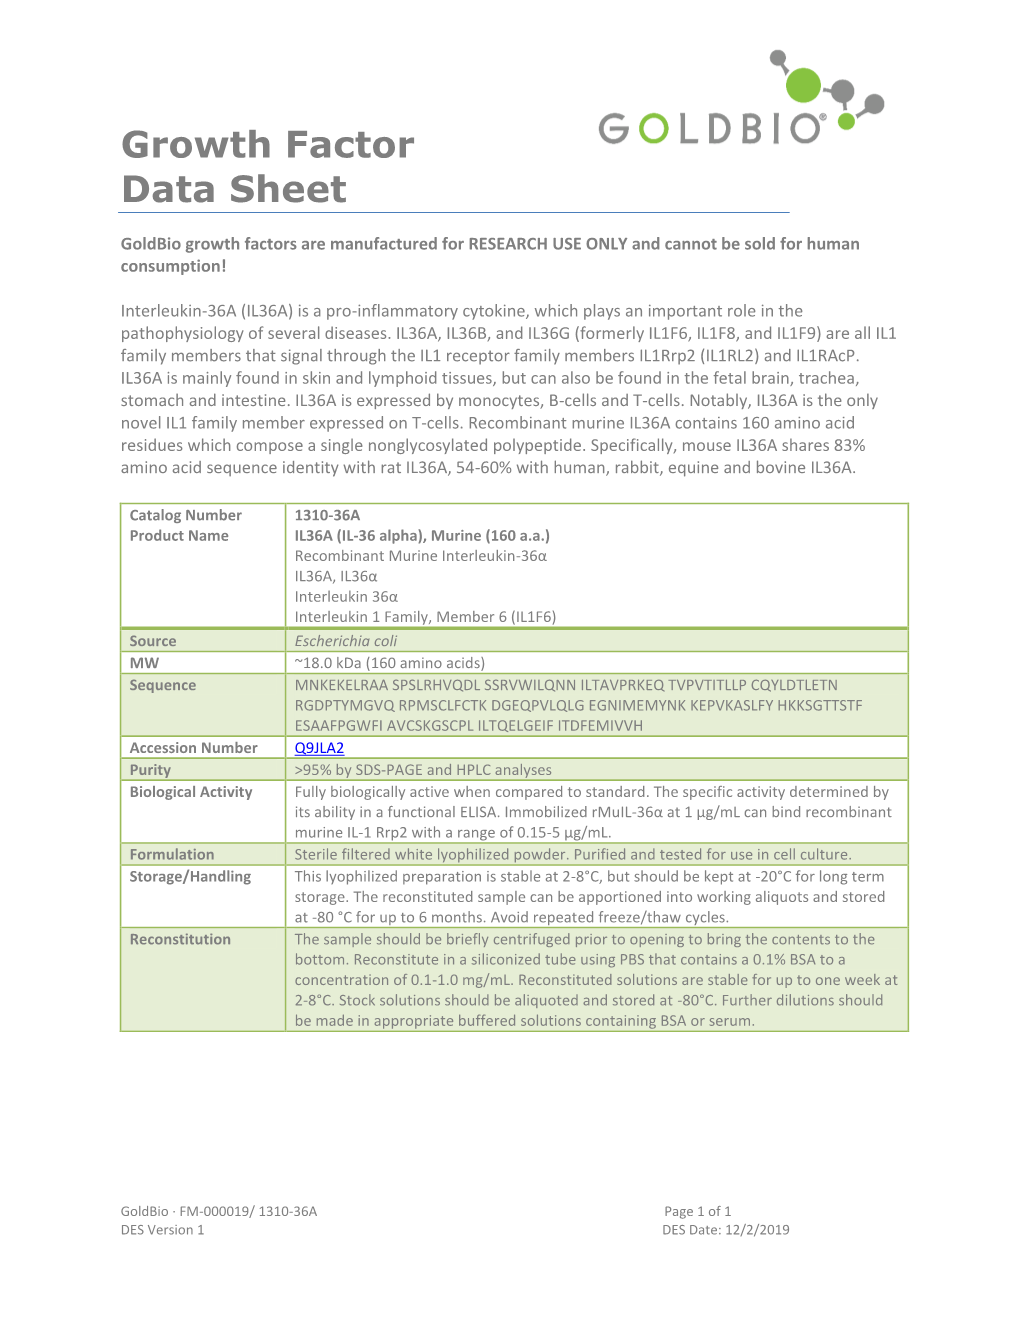 Growth Factor Data Sheet